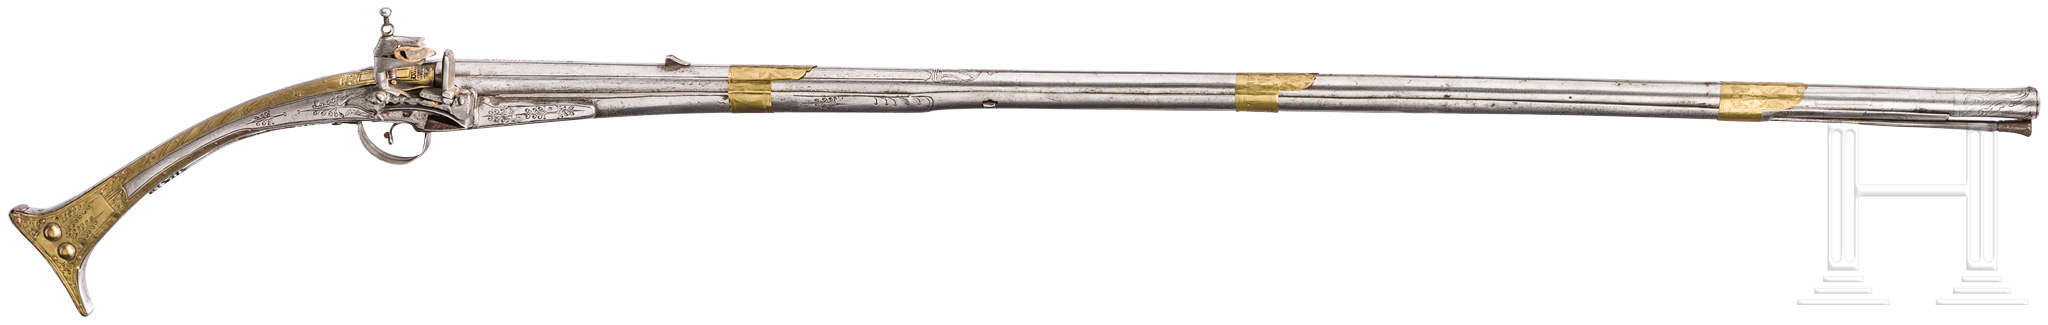 Miqueletgewehr, Albanien, um 1800Achtkantiger, in rund übergehender, glatter Lauf im Kaliber 16 mm